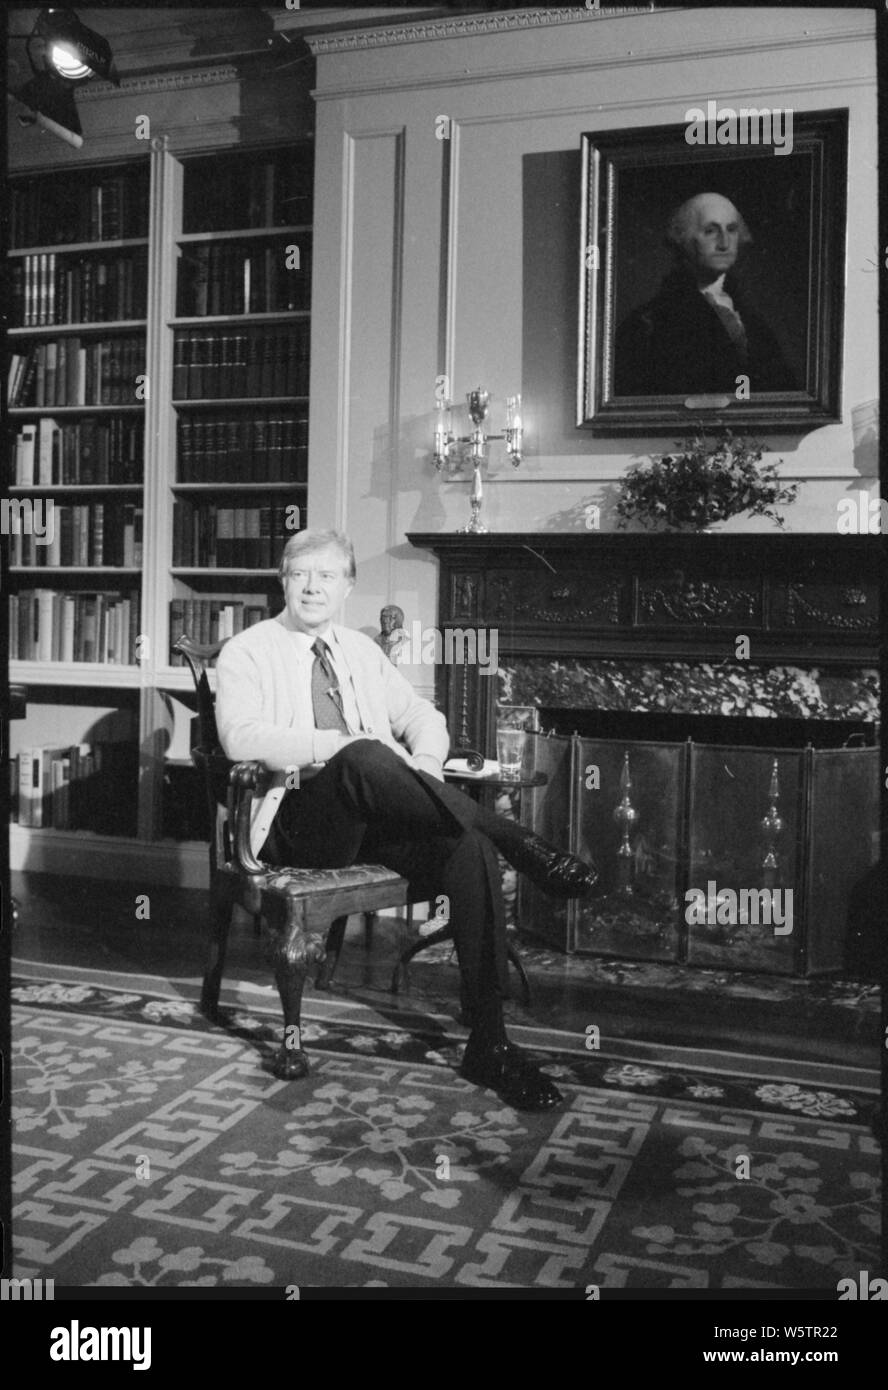 Photographie de Jimmy Carter à la Maison Blanche lors d'une bibliothèque au coin du feu, télévisé sur l'énergie Banque D'Images